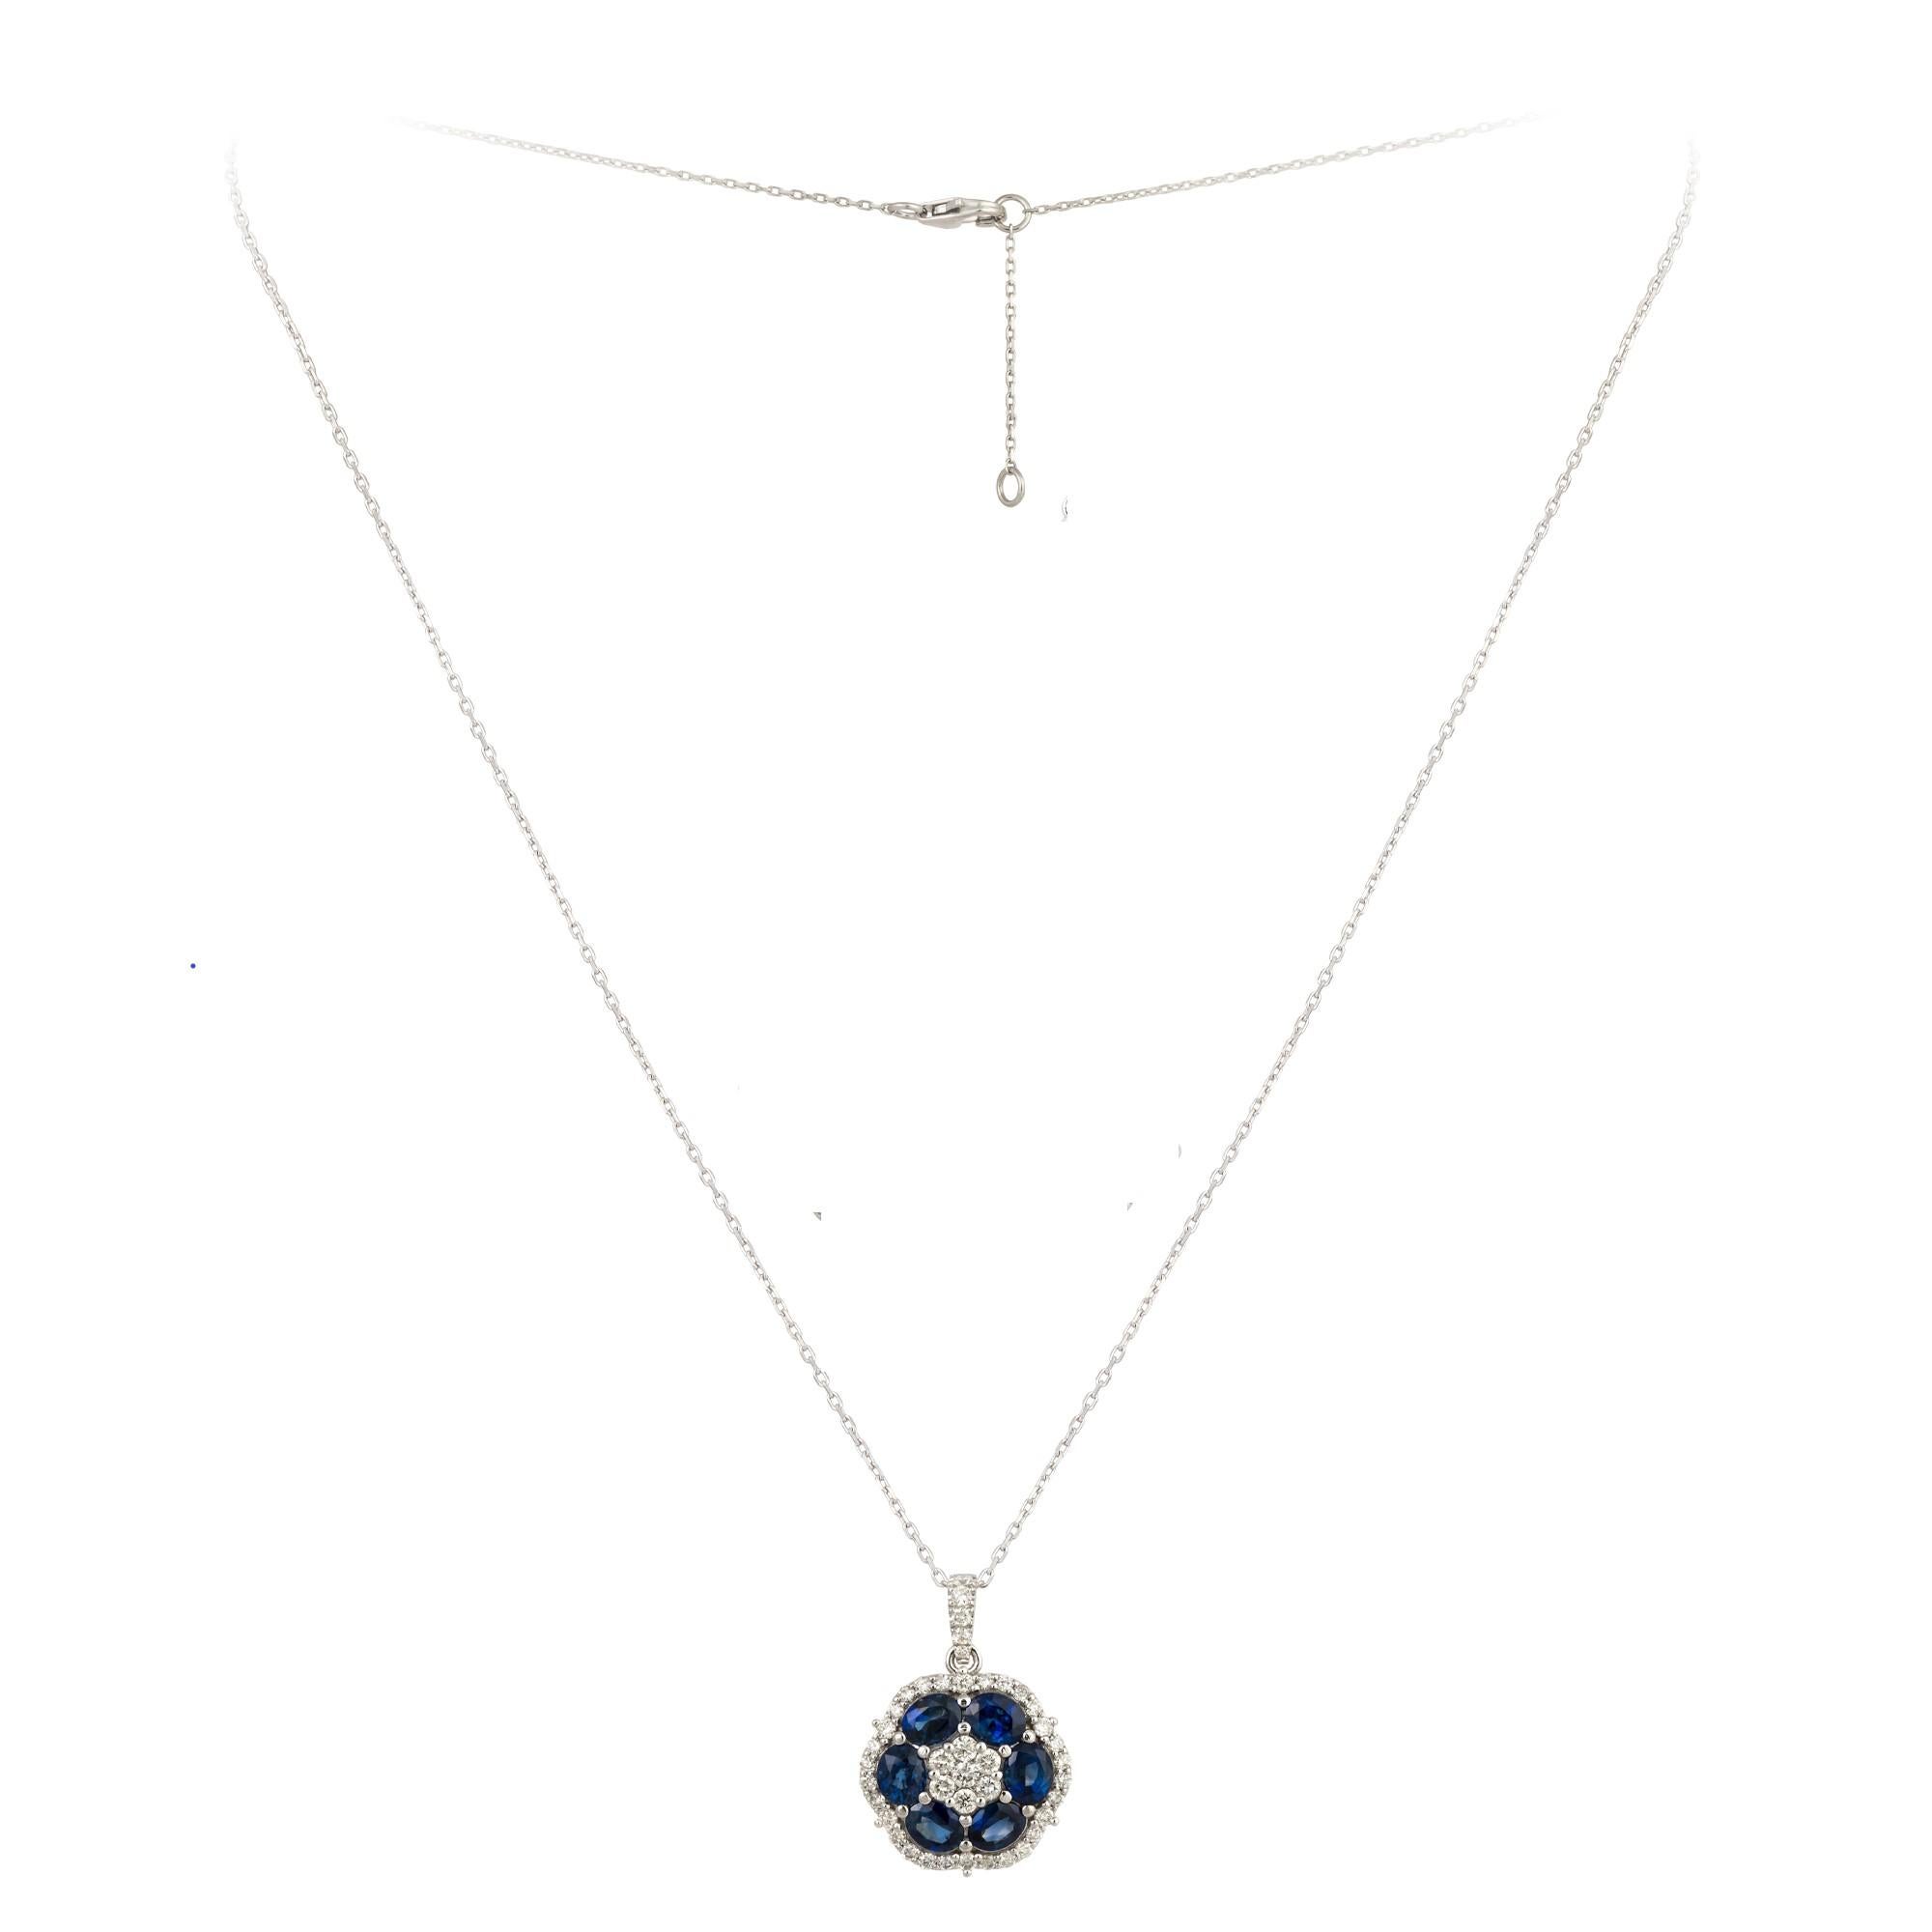 Taille mixte Collier pendentif fleur rare en or 18 carats avec saphir bleu fantaisie et diamants 6 500 $, neuf avec étiquette en vente